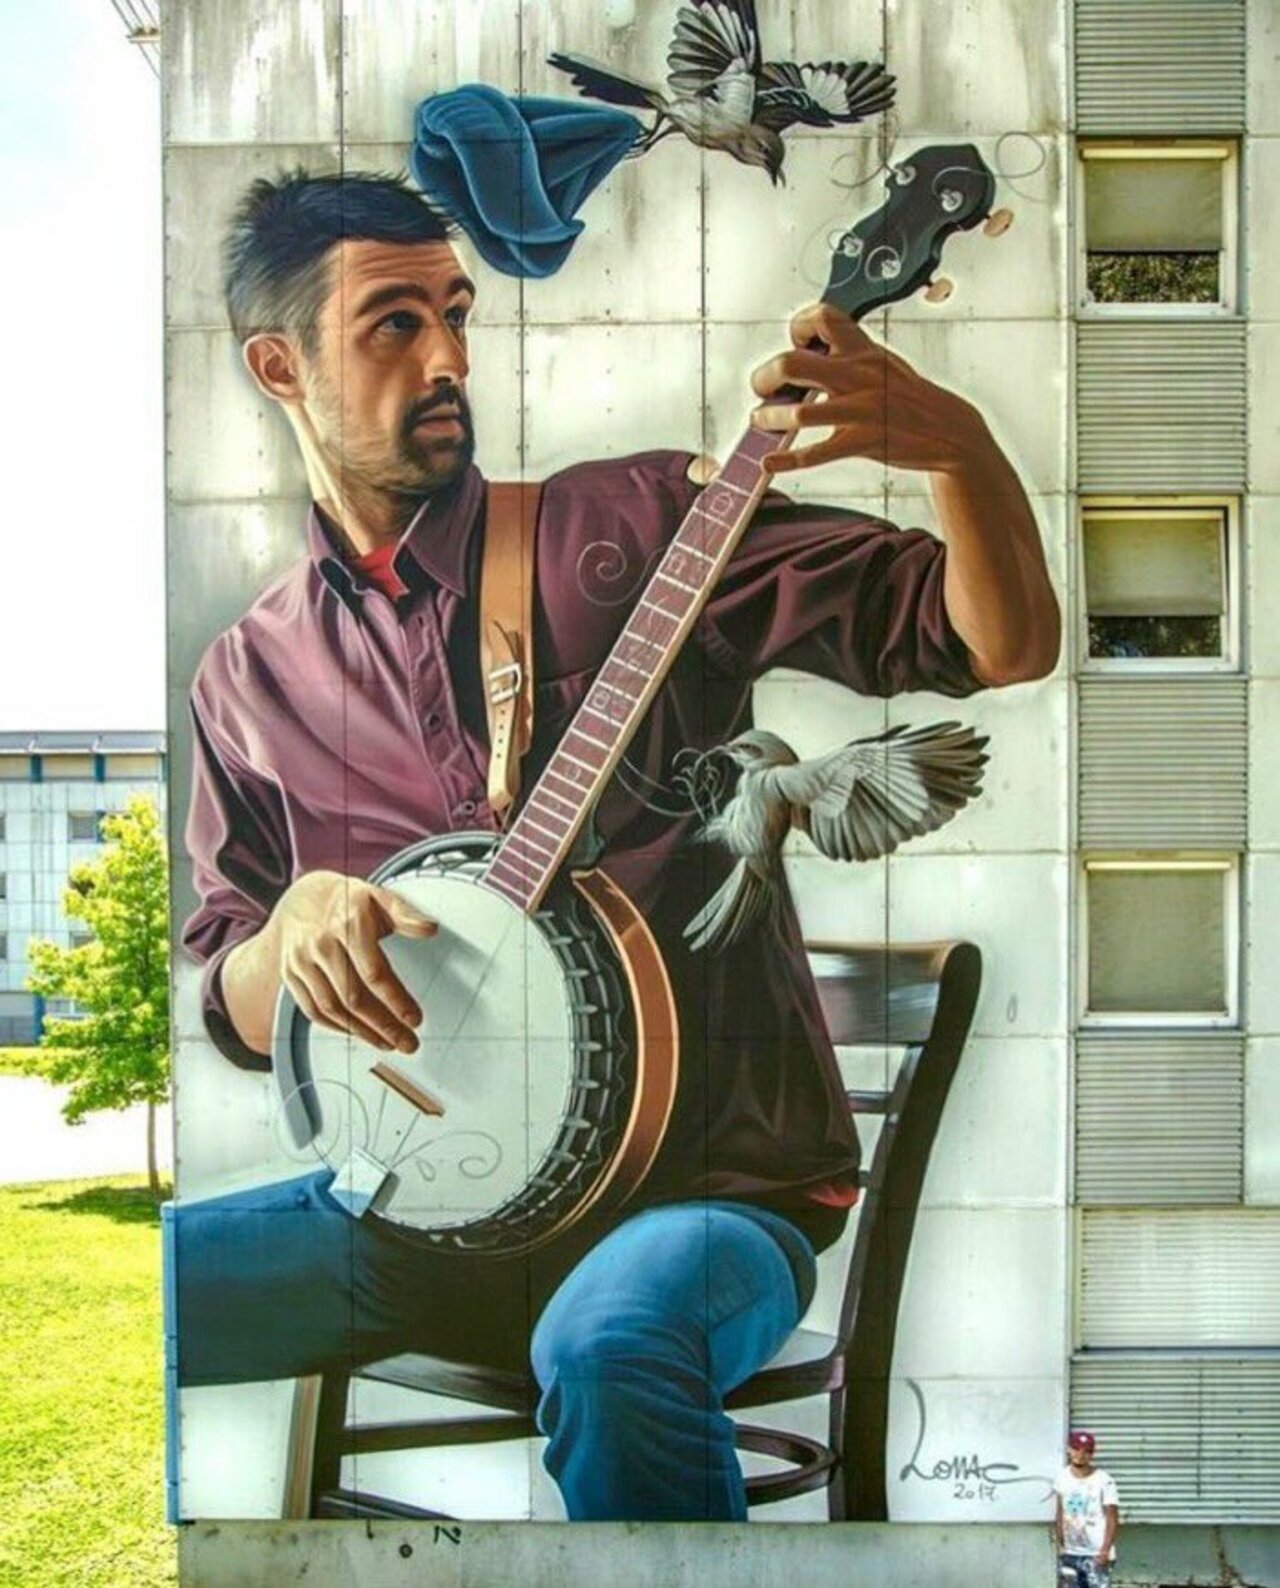 #mural by Lonac found #Grenoble #France #streetart #art #graffiti https://t.co/YVGlNfotzW